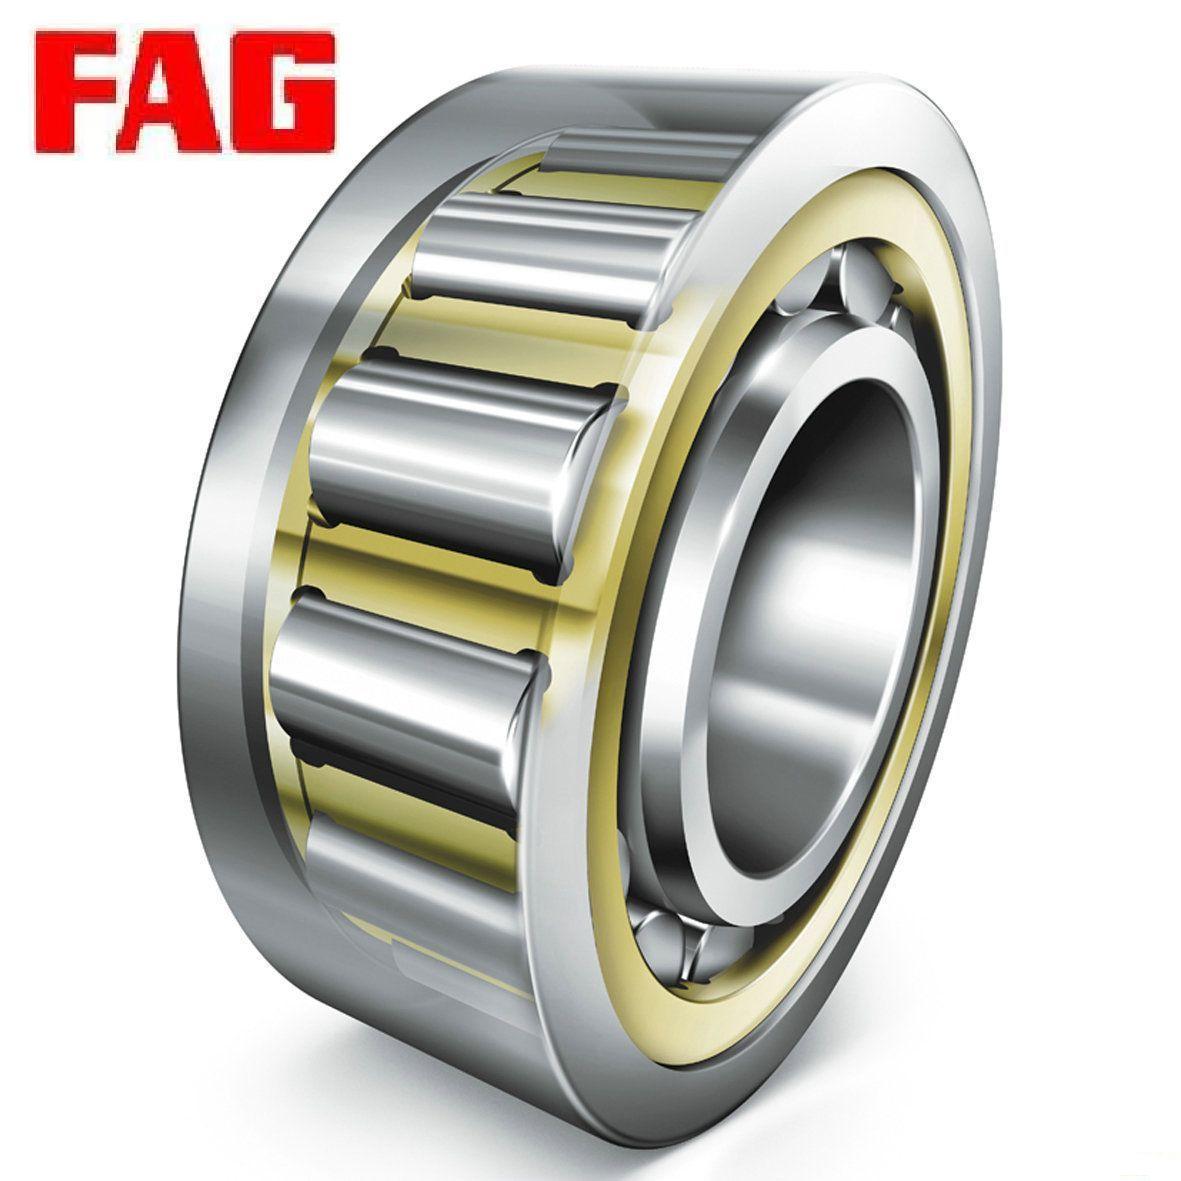 FAG|圆柱滚子轴承